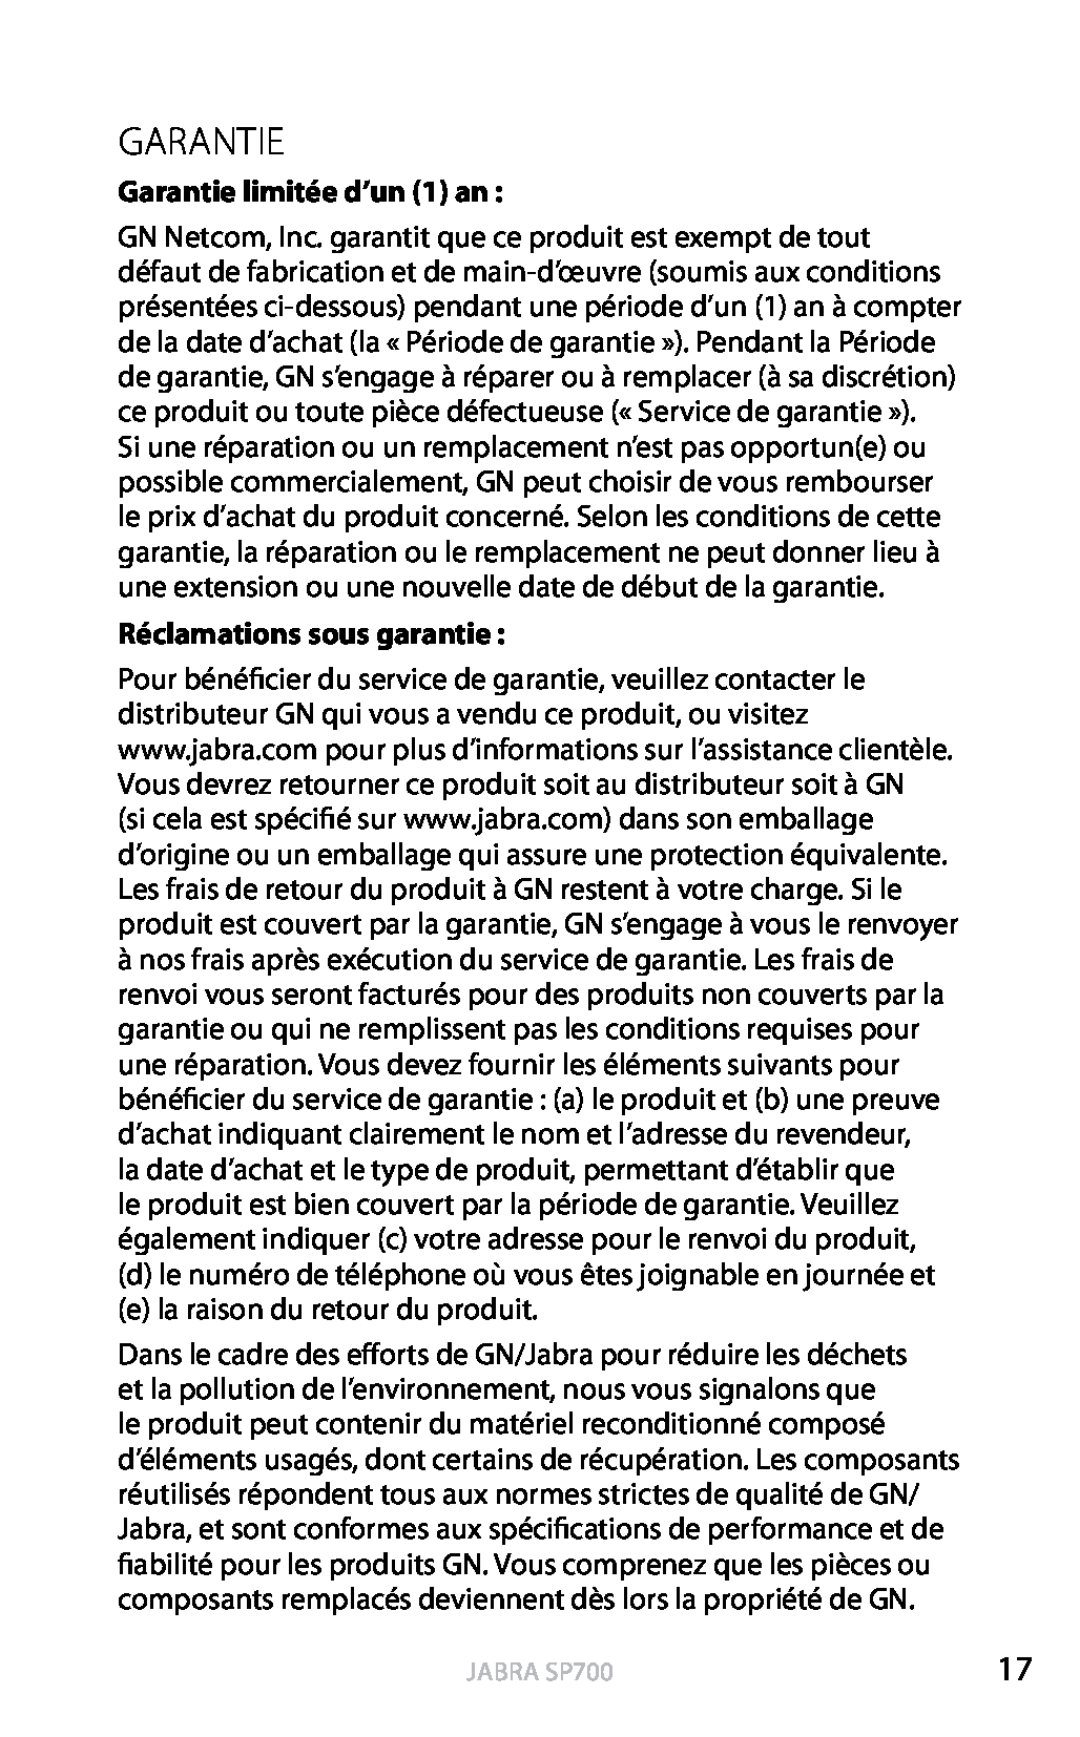 Jabra user manual Garantie limitée d’un 1 an, Réclamations sous garantie, Français, Jabra SP700 